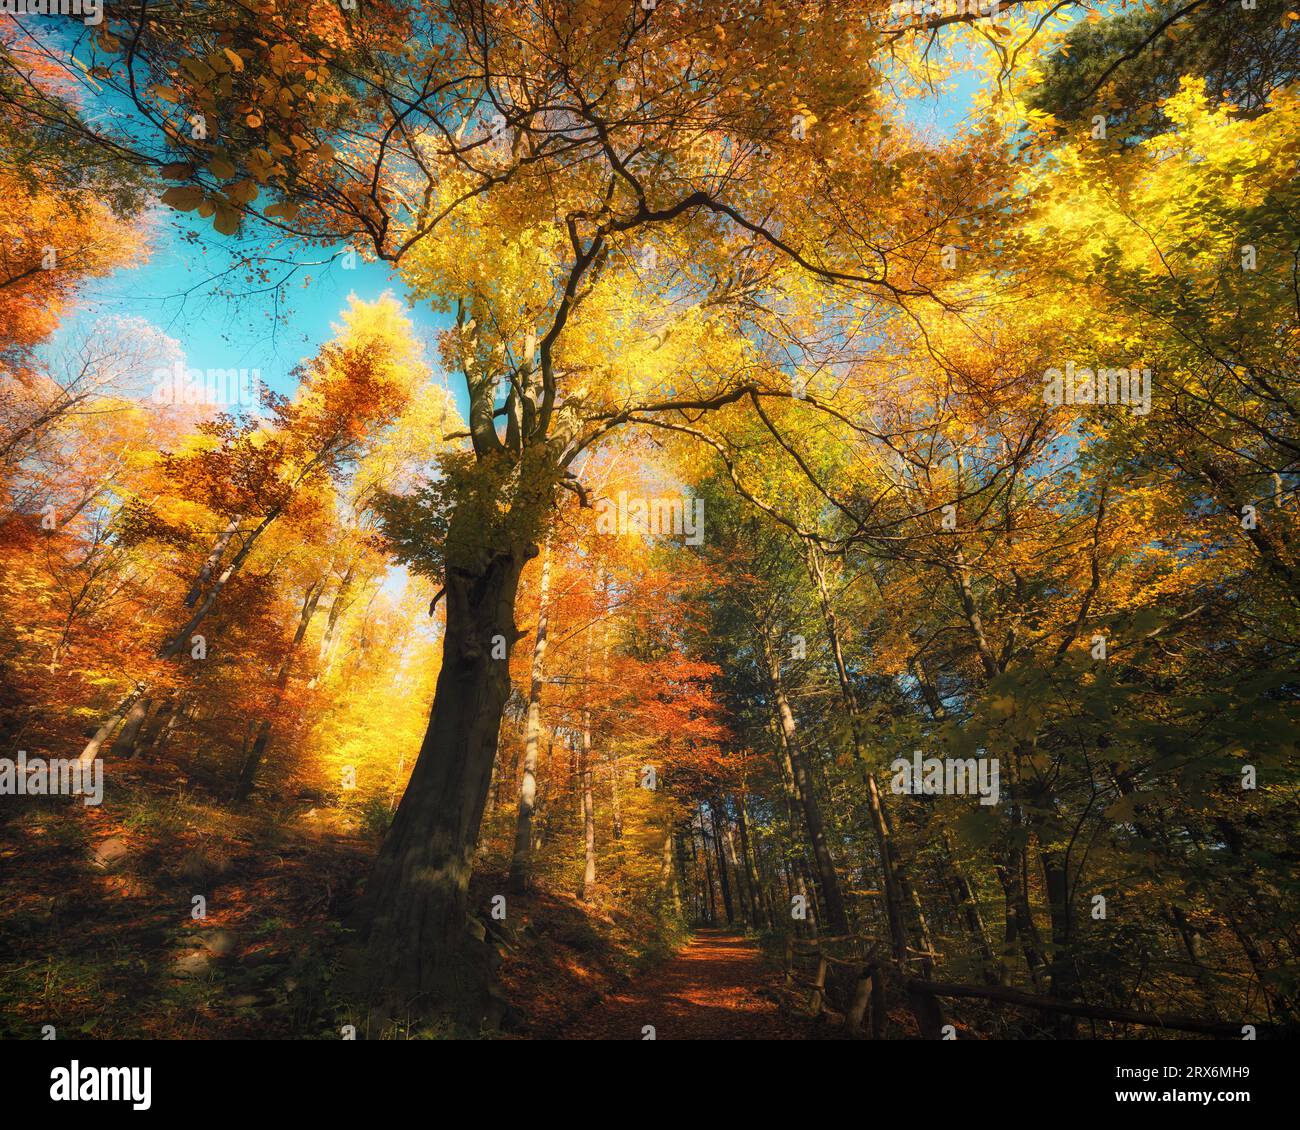 Rami di alberi colorati in una foresta pittoricamente soleggiata in autunno. Cime degli alberi splendidamente illuminate dal sole con cielo blu brillante Foto Stock